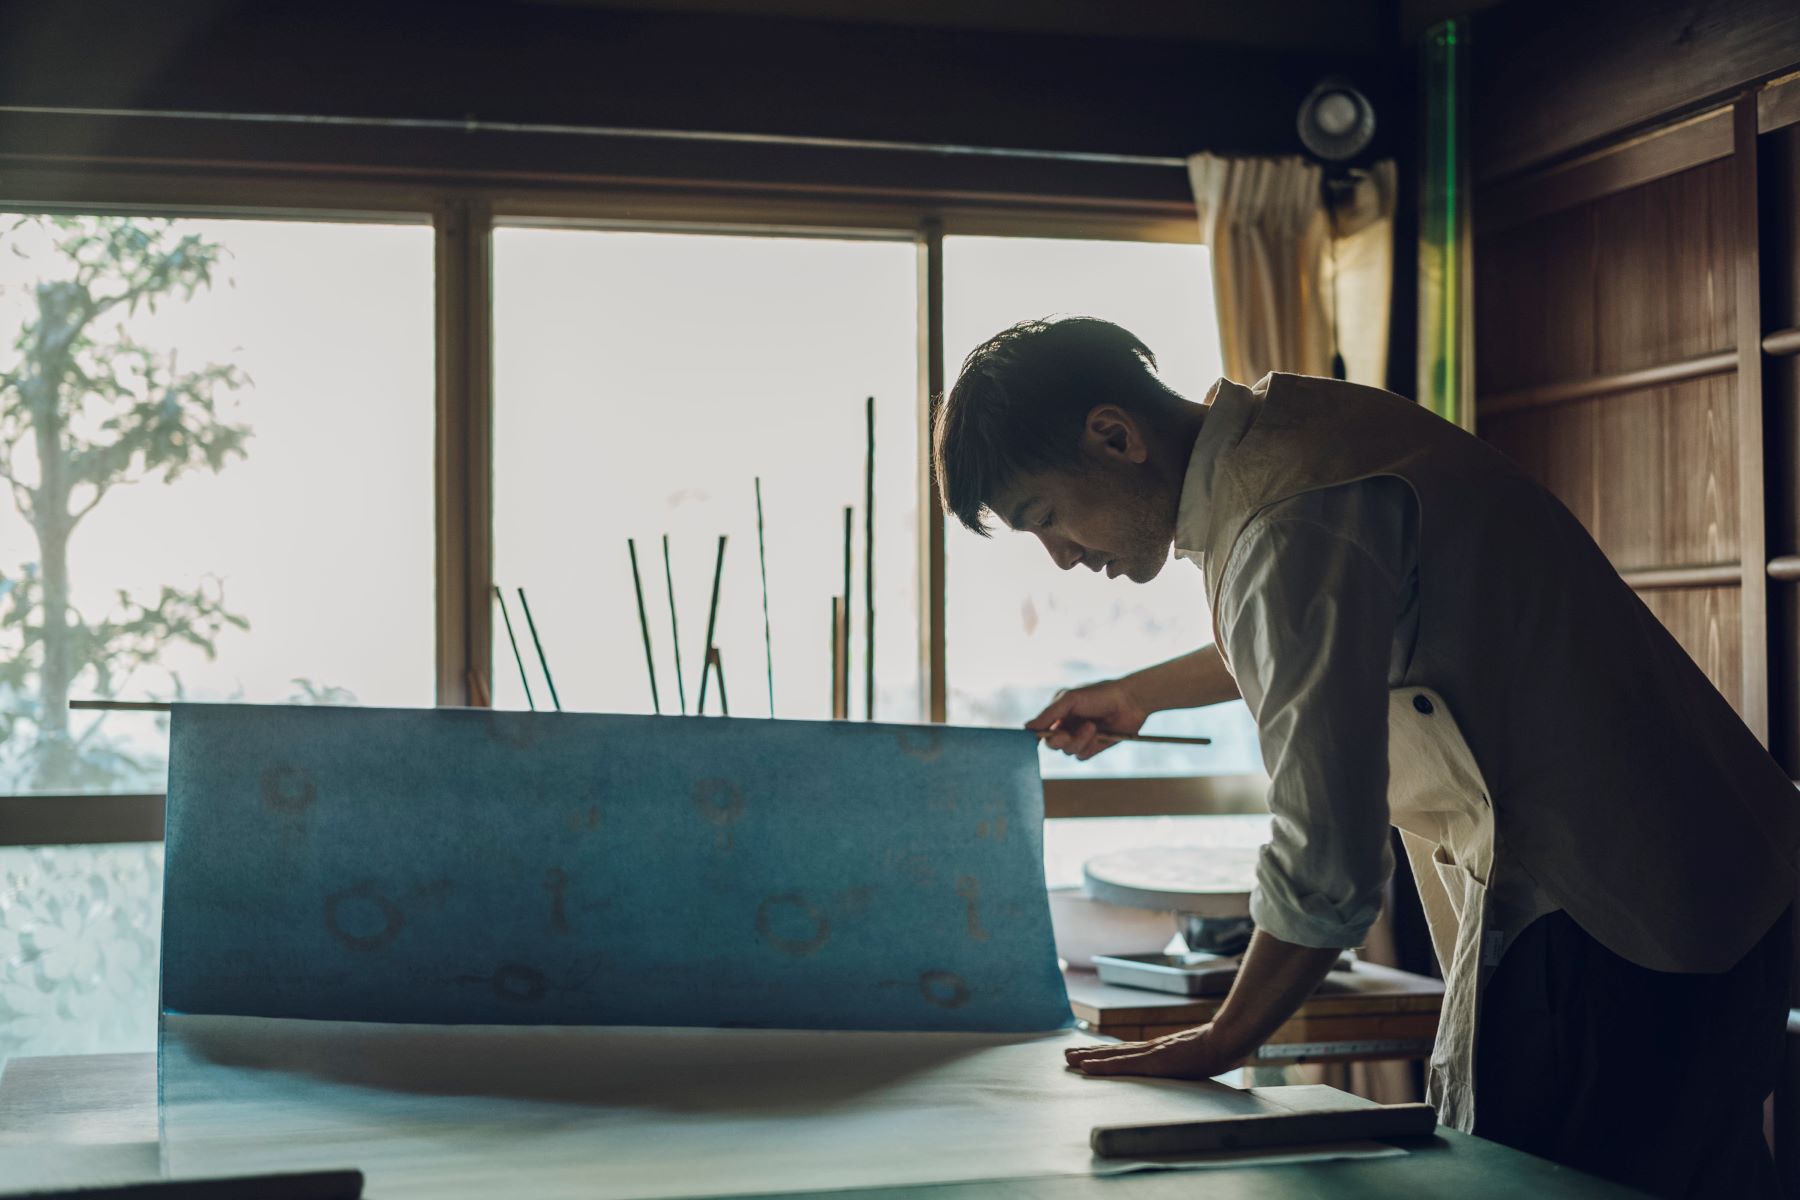 日本の伝統美、唐紙の可能性を現代に拓く「野田版画工房」